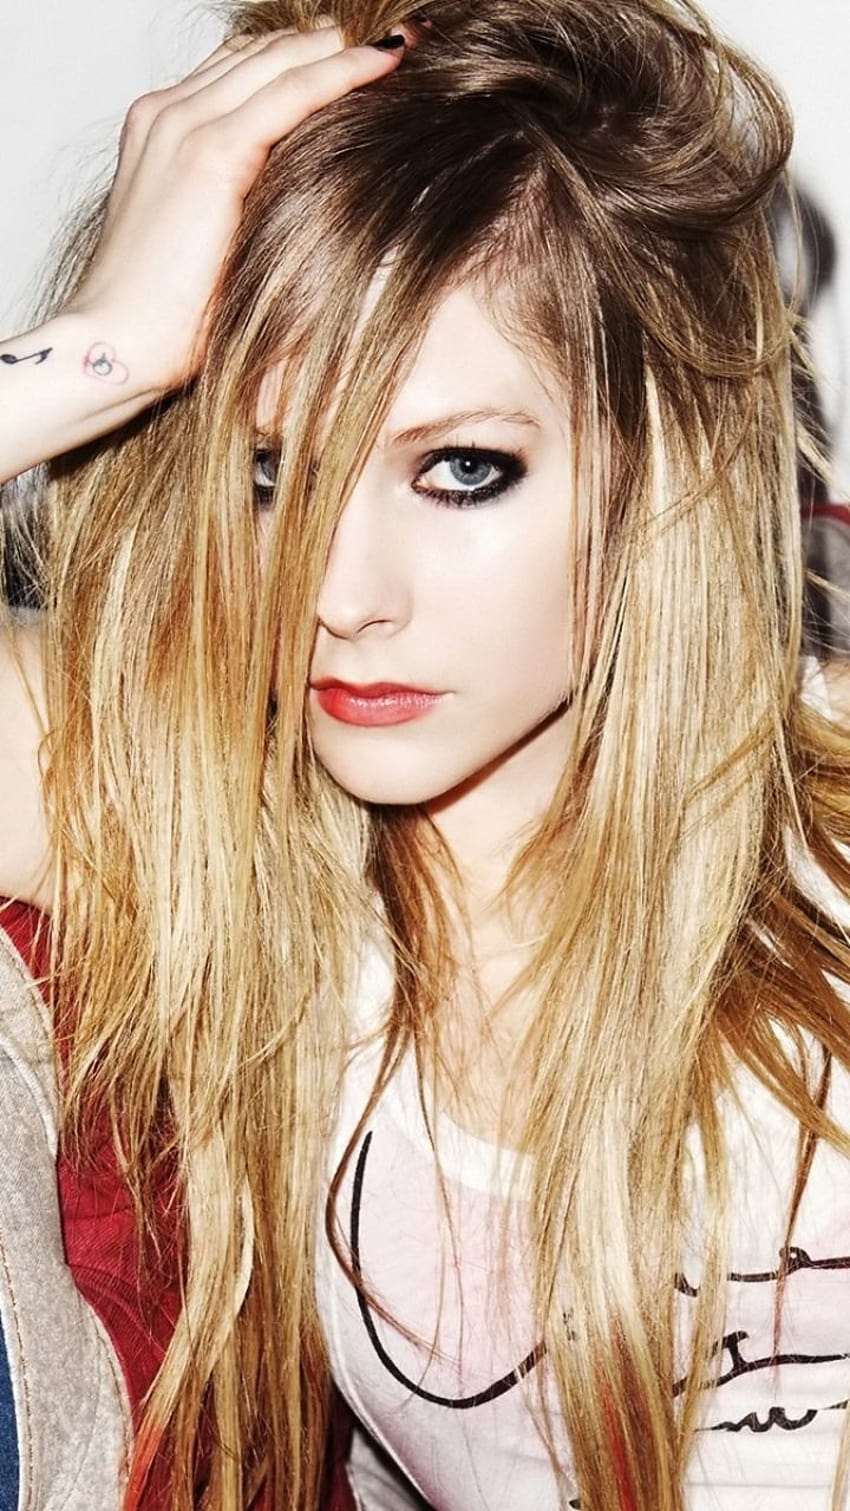 Música/Avril Lavigne, teléfono avril lavigne fondo de pantalla del teléfono